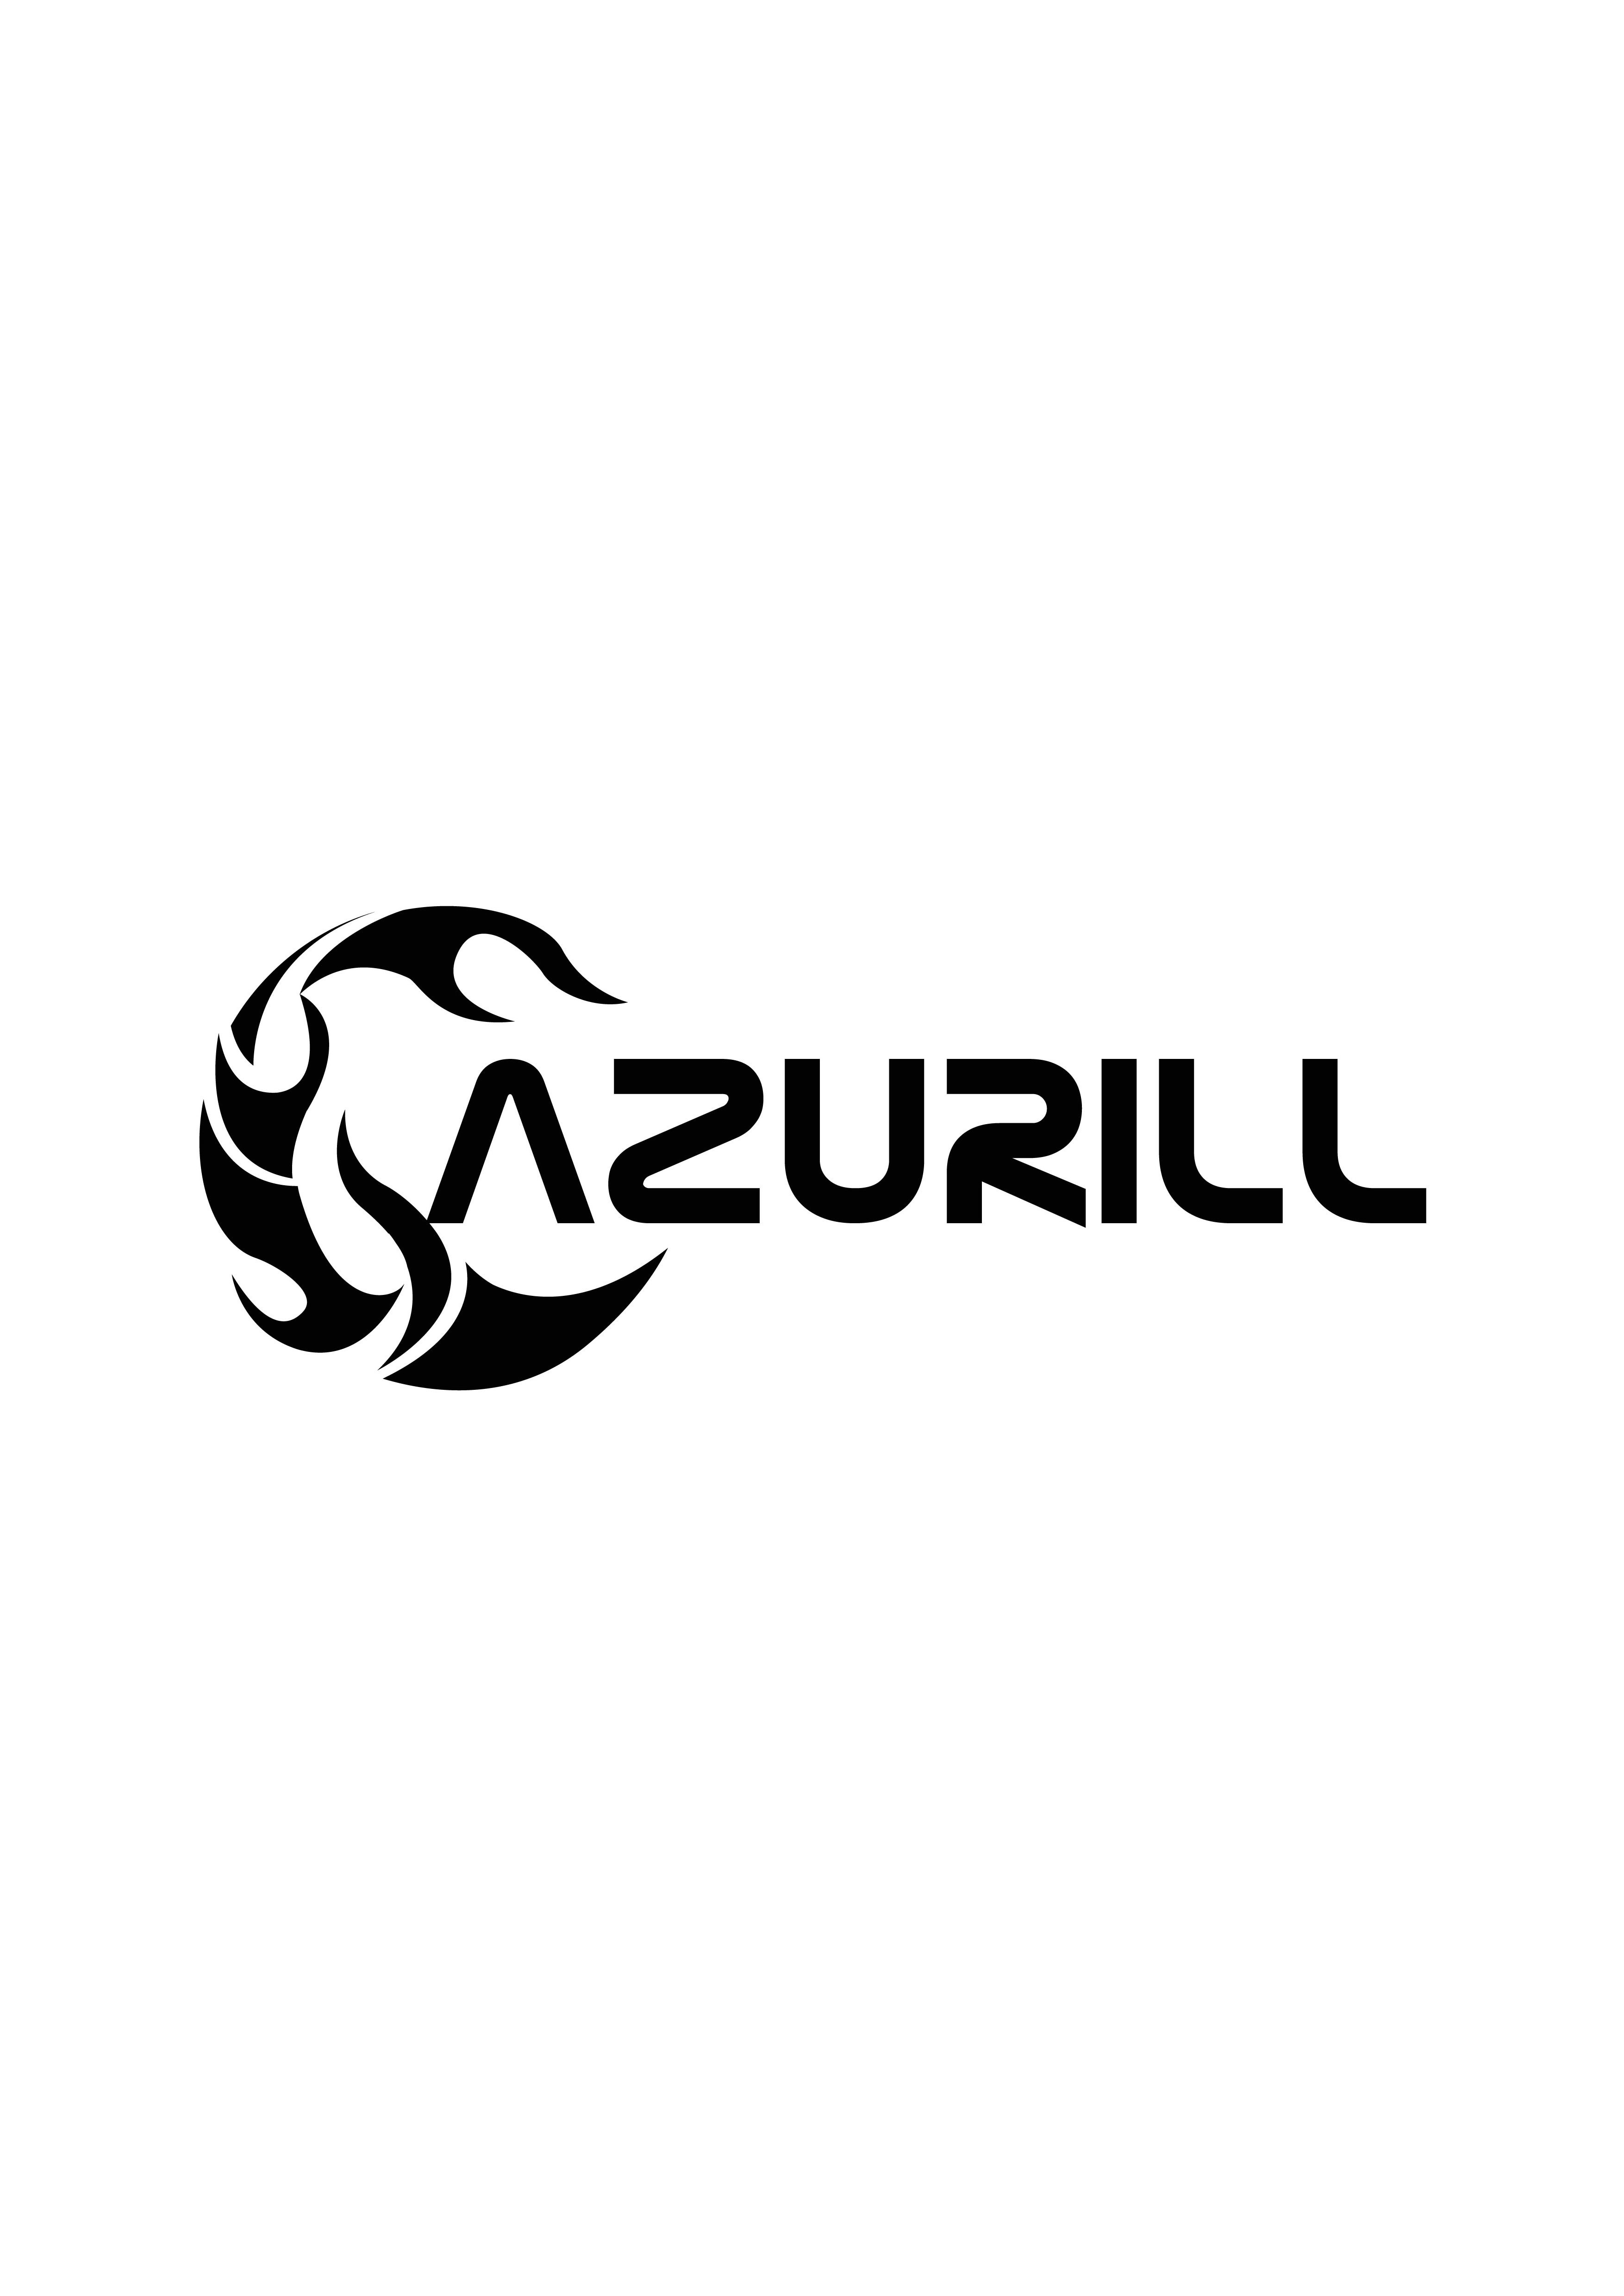  AZURILL